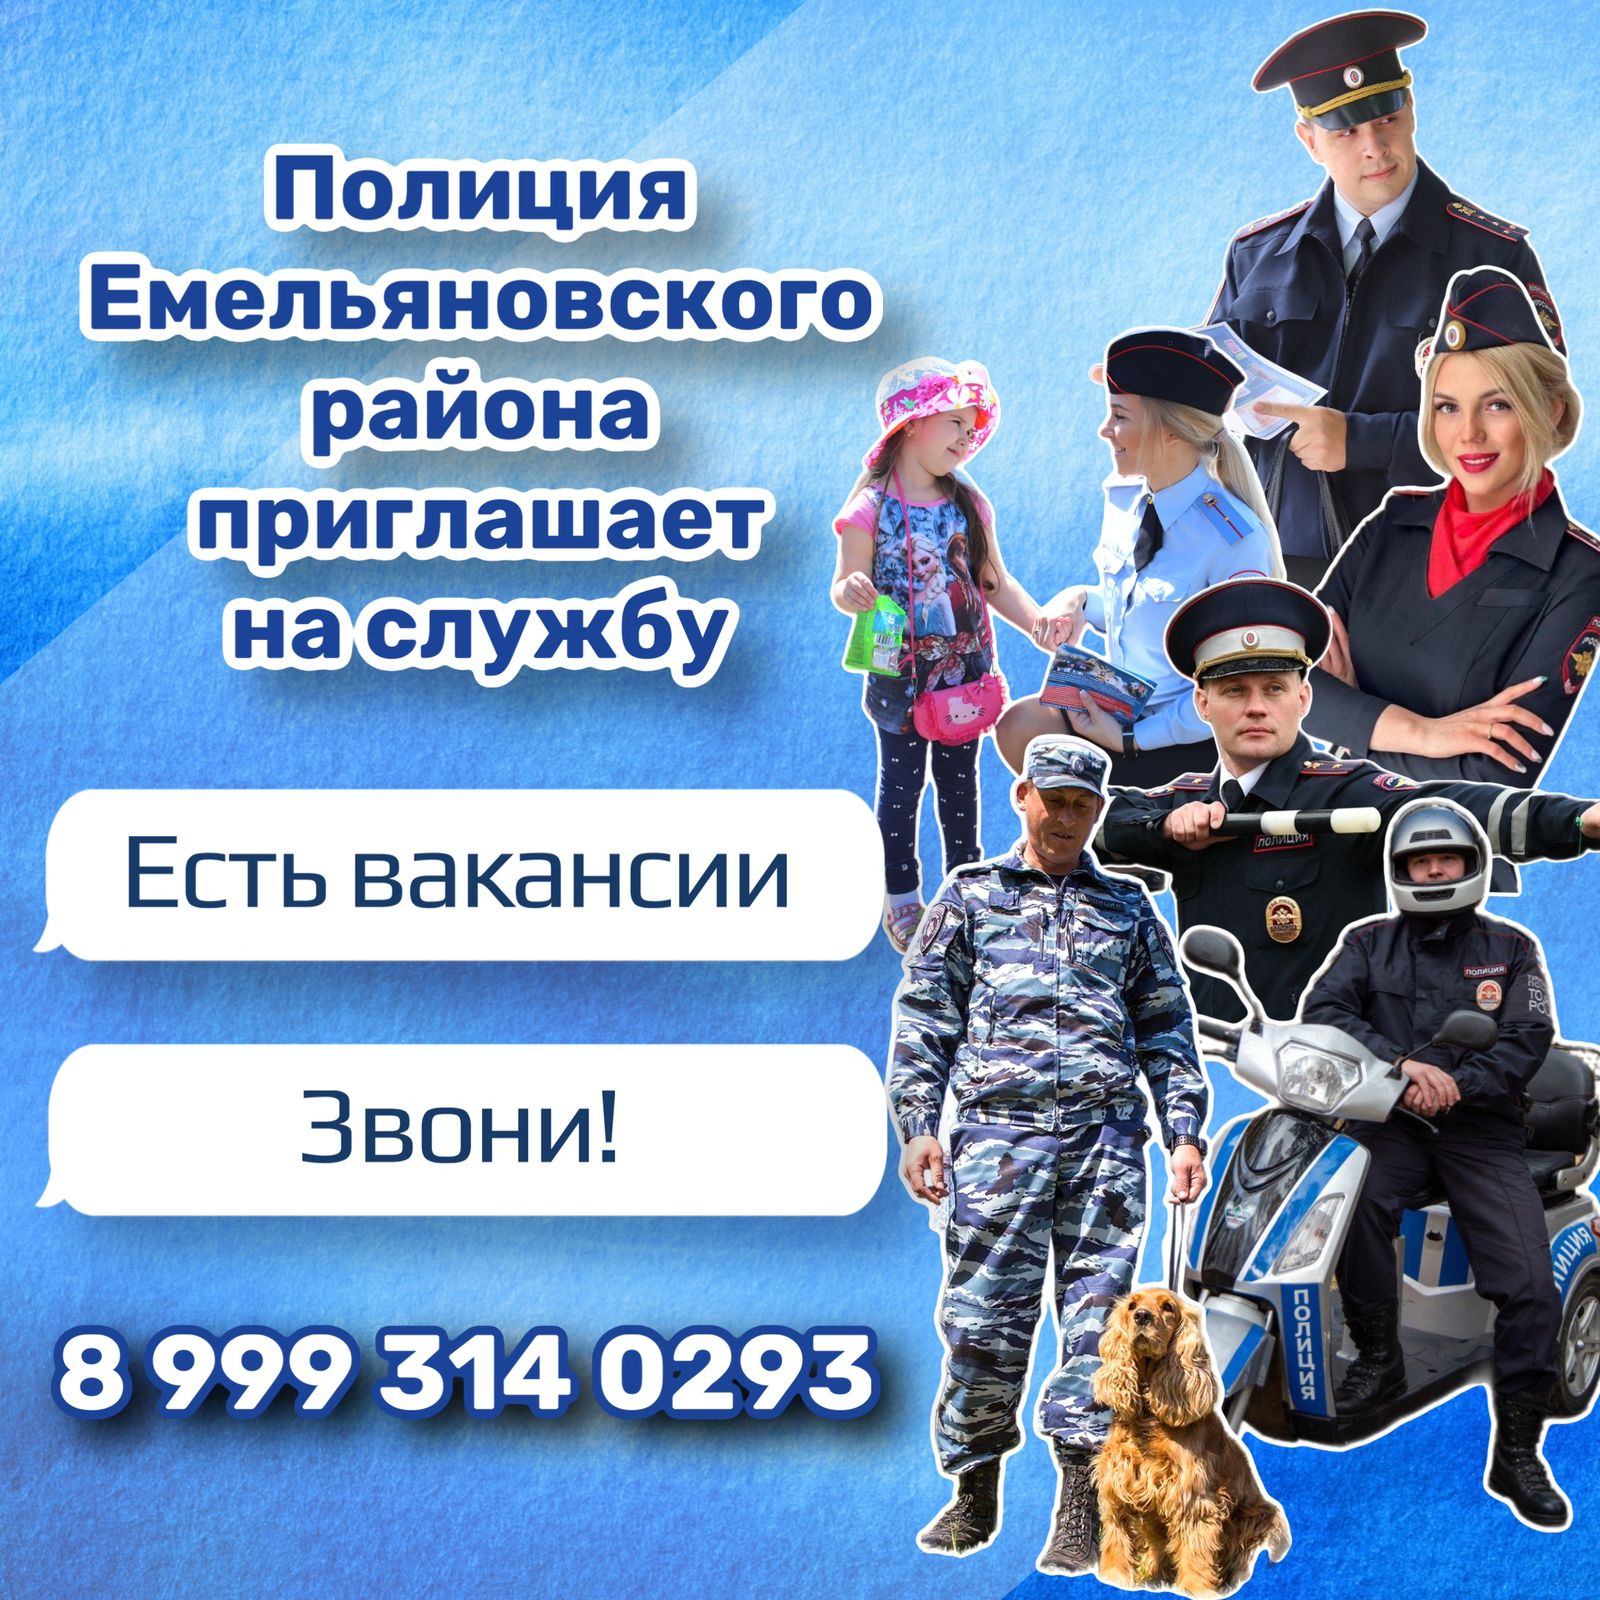 Межмуниципальном отделе МВД России «Емельяновский» имеются вакансии по следующим должностям:.